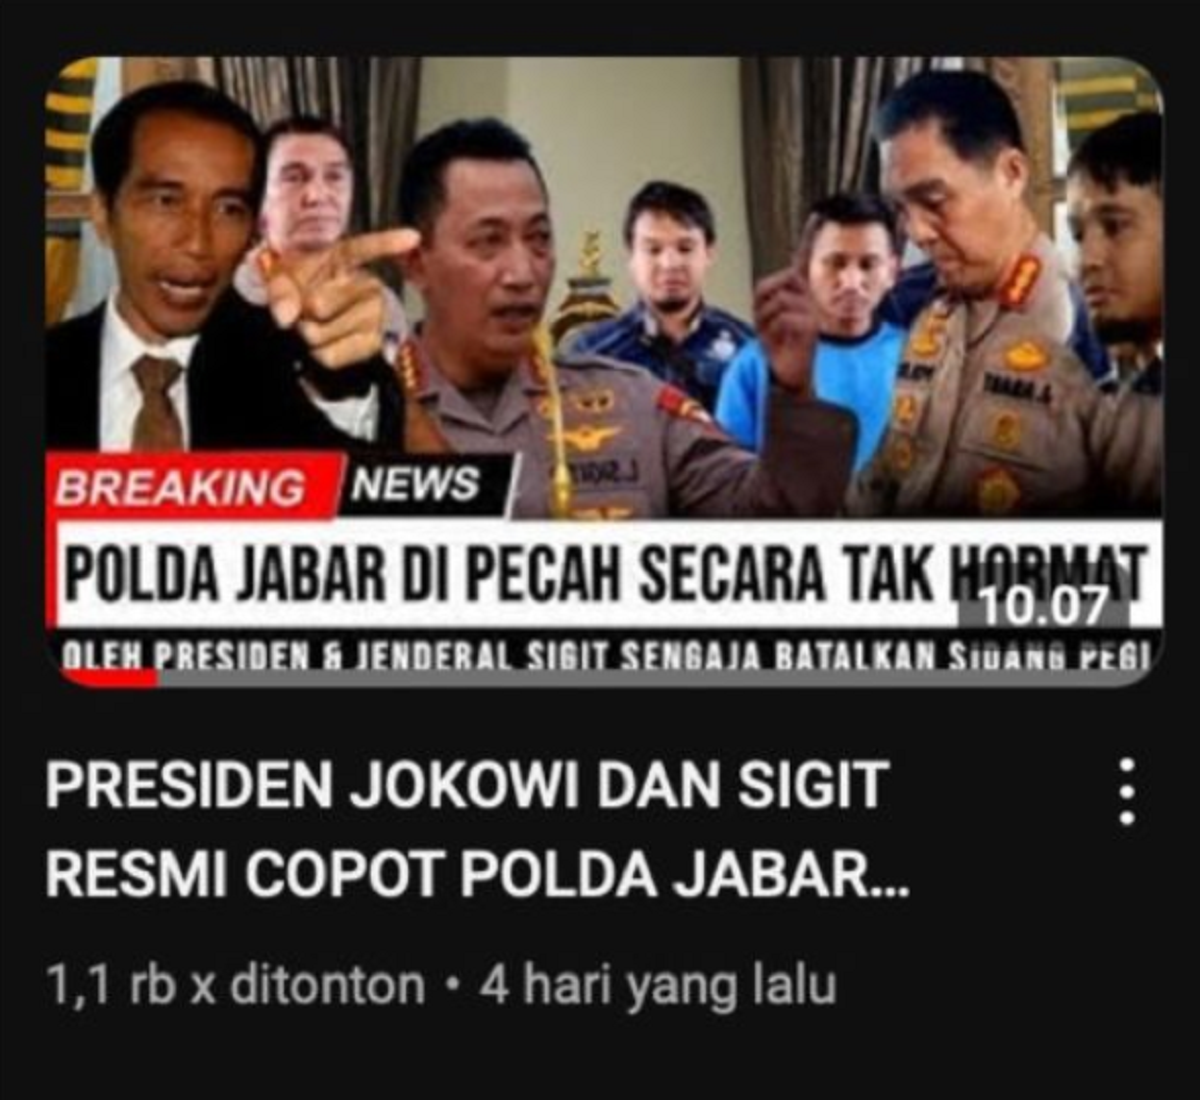 Unggahan video yang menarasikan Jokowi dan Kapolri copot jabatan Kapolda Jabar karena sengaja batalkan sidang Pegi, tersangka Vina Cirebon